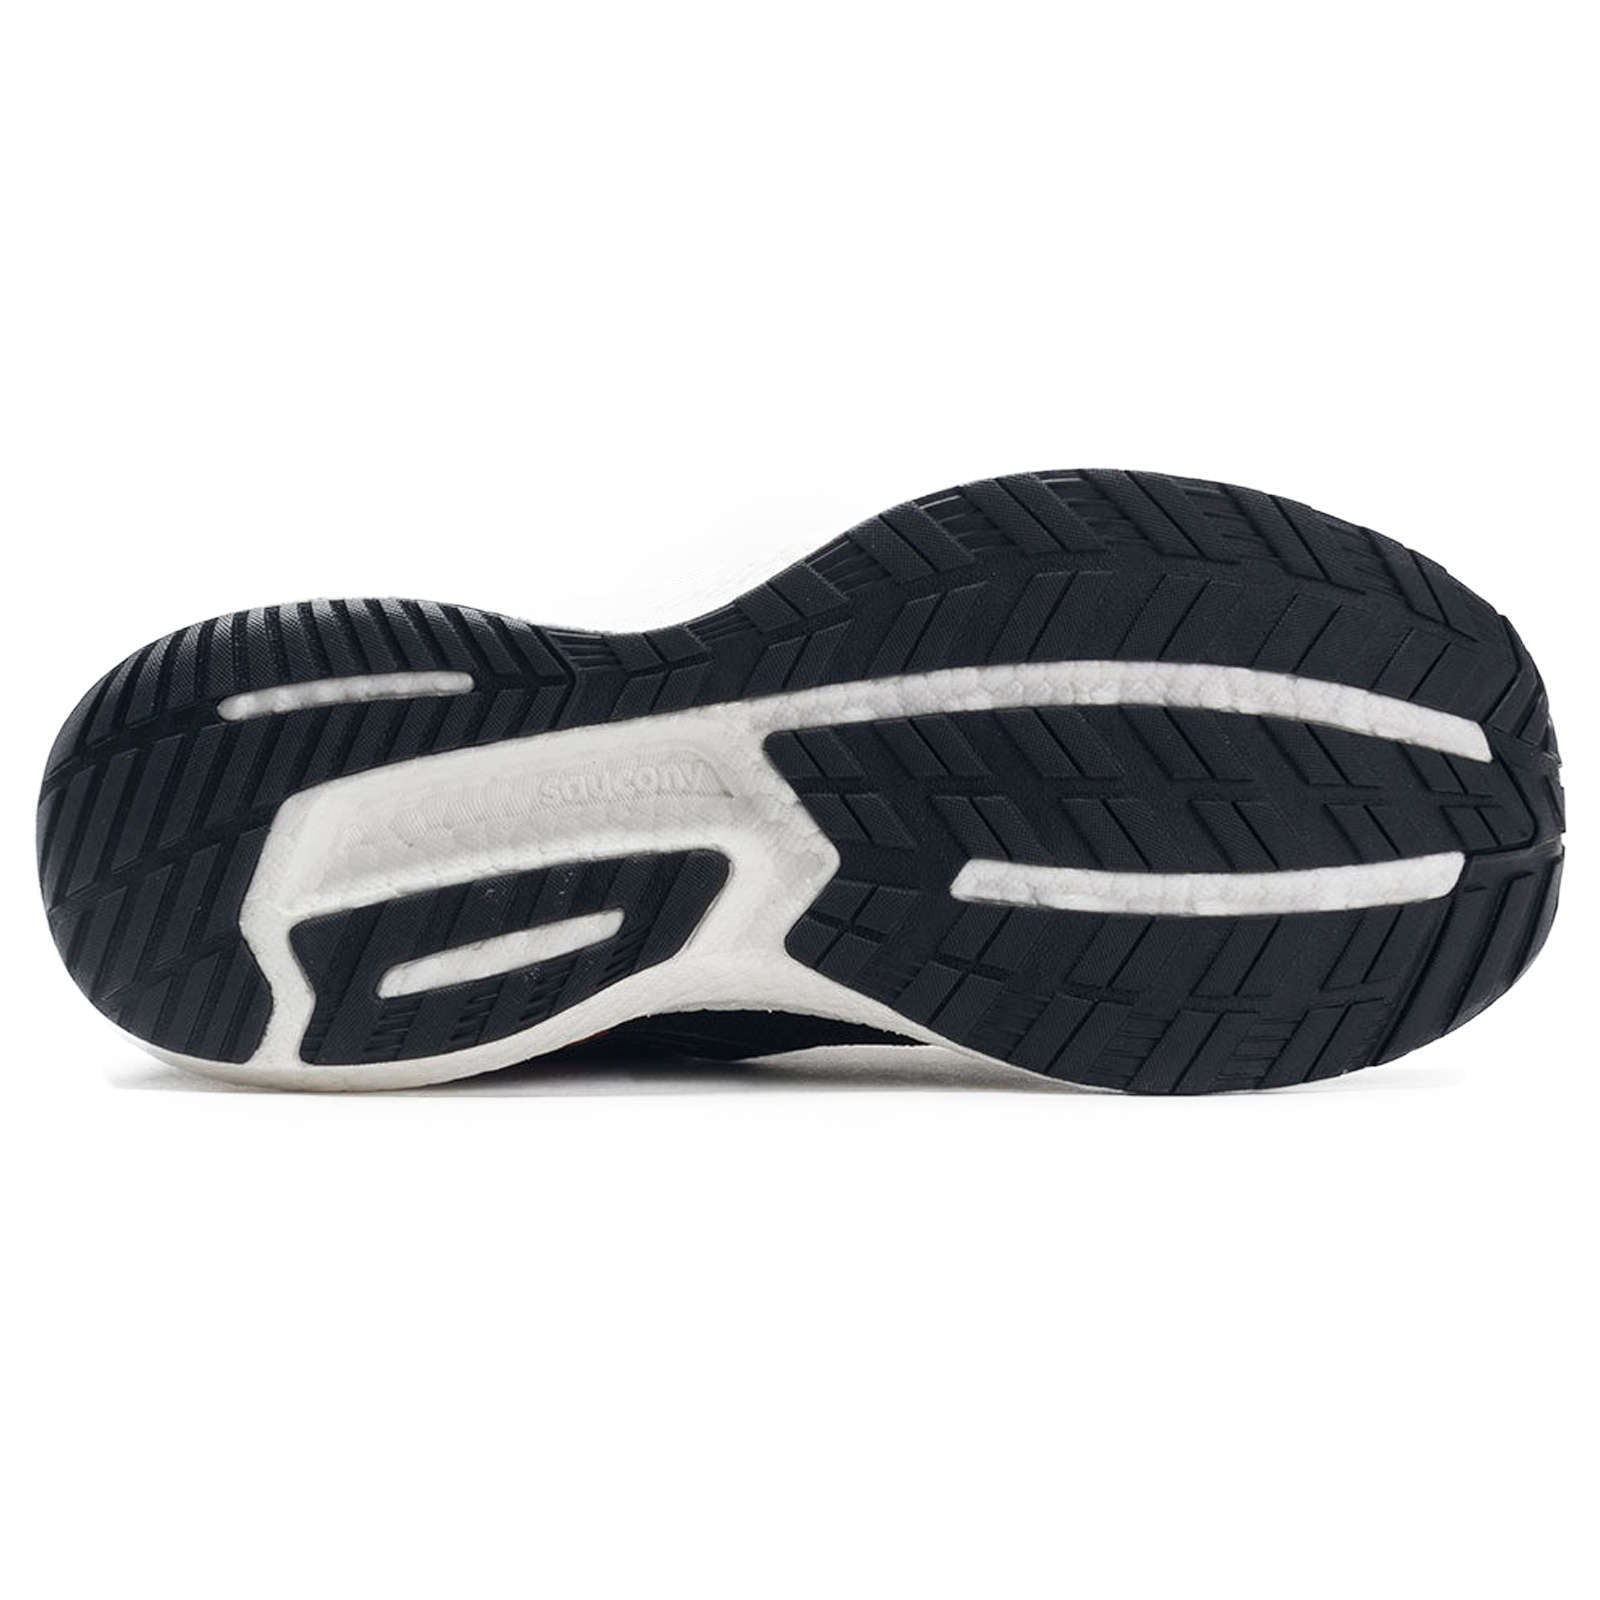 Saucony Triumph 19 Synthetic Textile Men's Low-Top Sneakers#color_black white